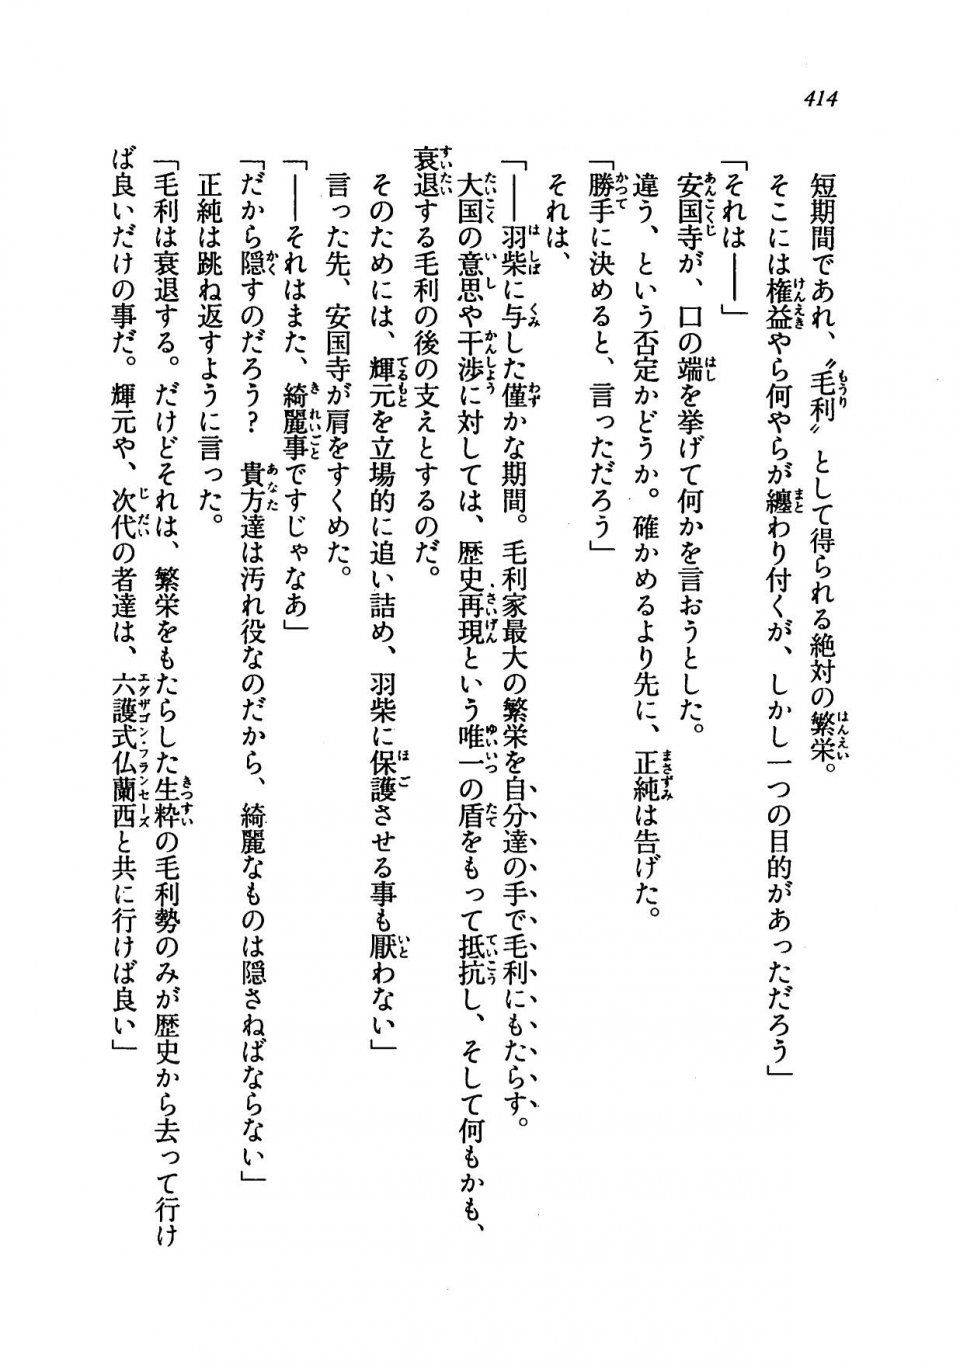 Kyoukai Senjou no Horizon LN Vol 19(8A) - Photo #414